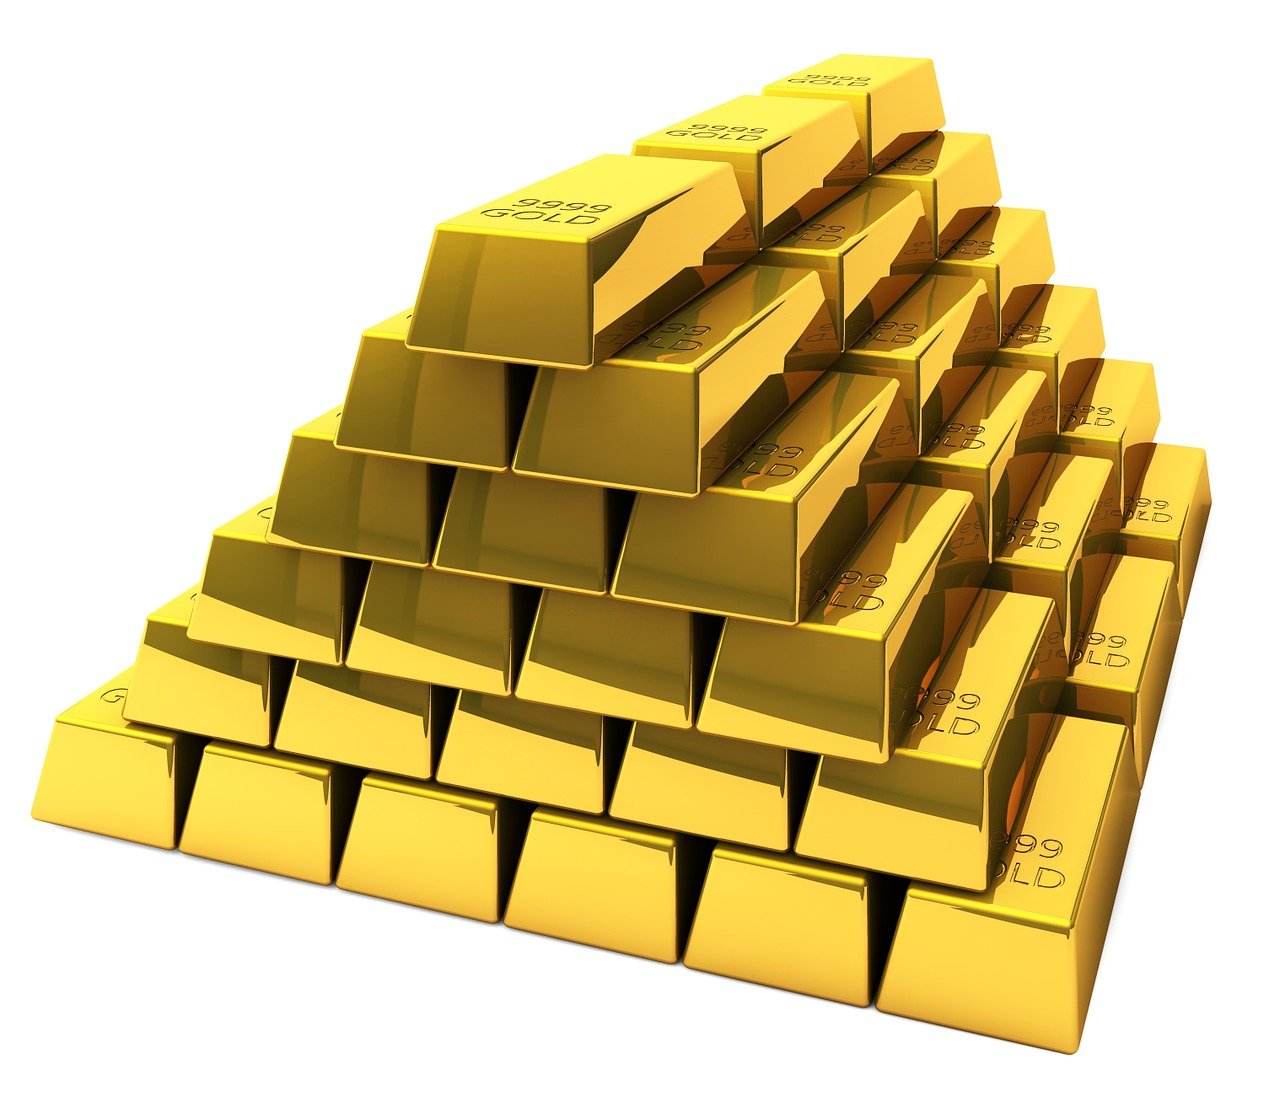 Gold IRA Investing